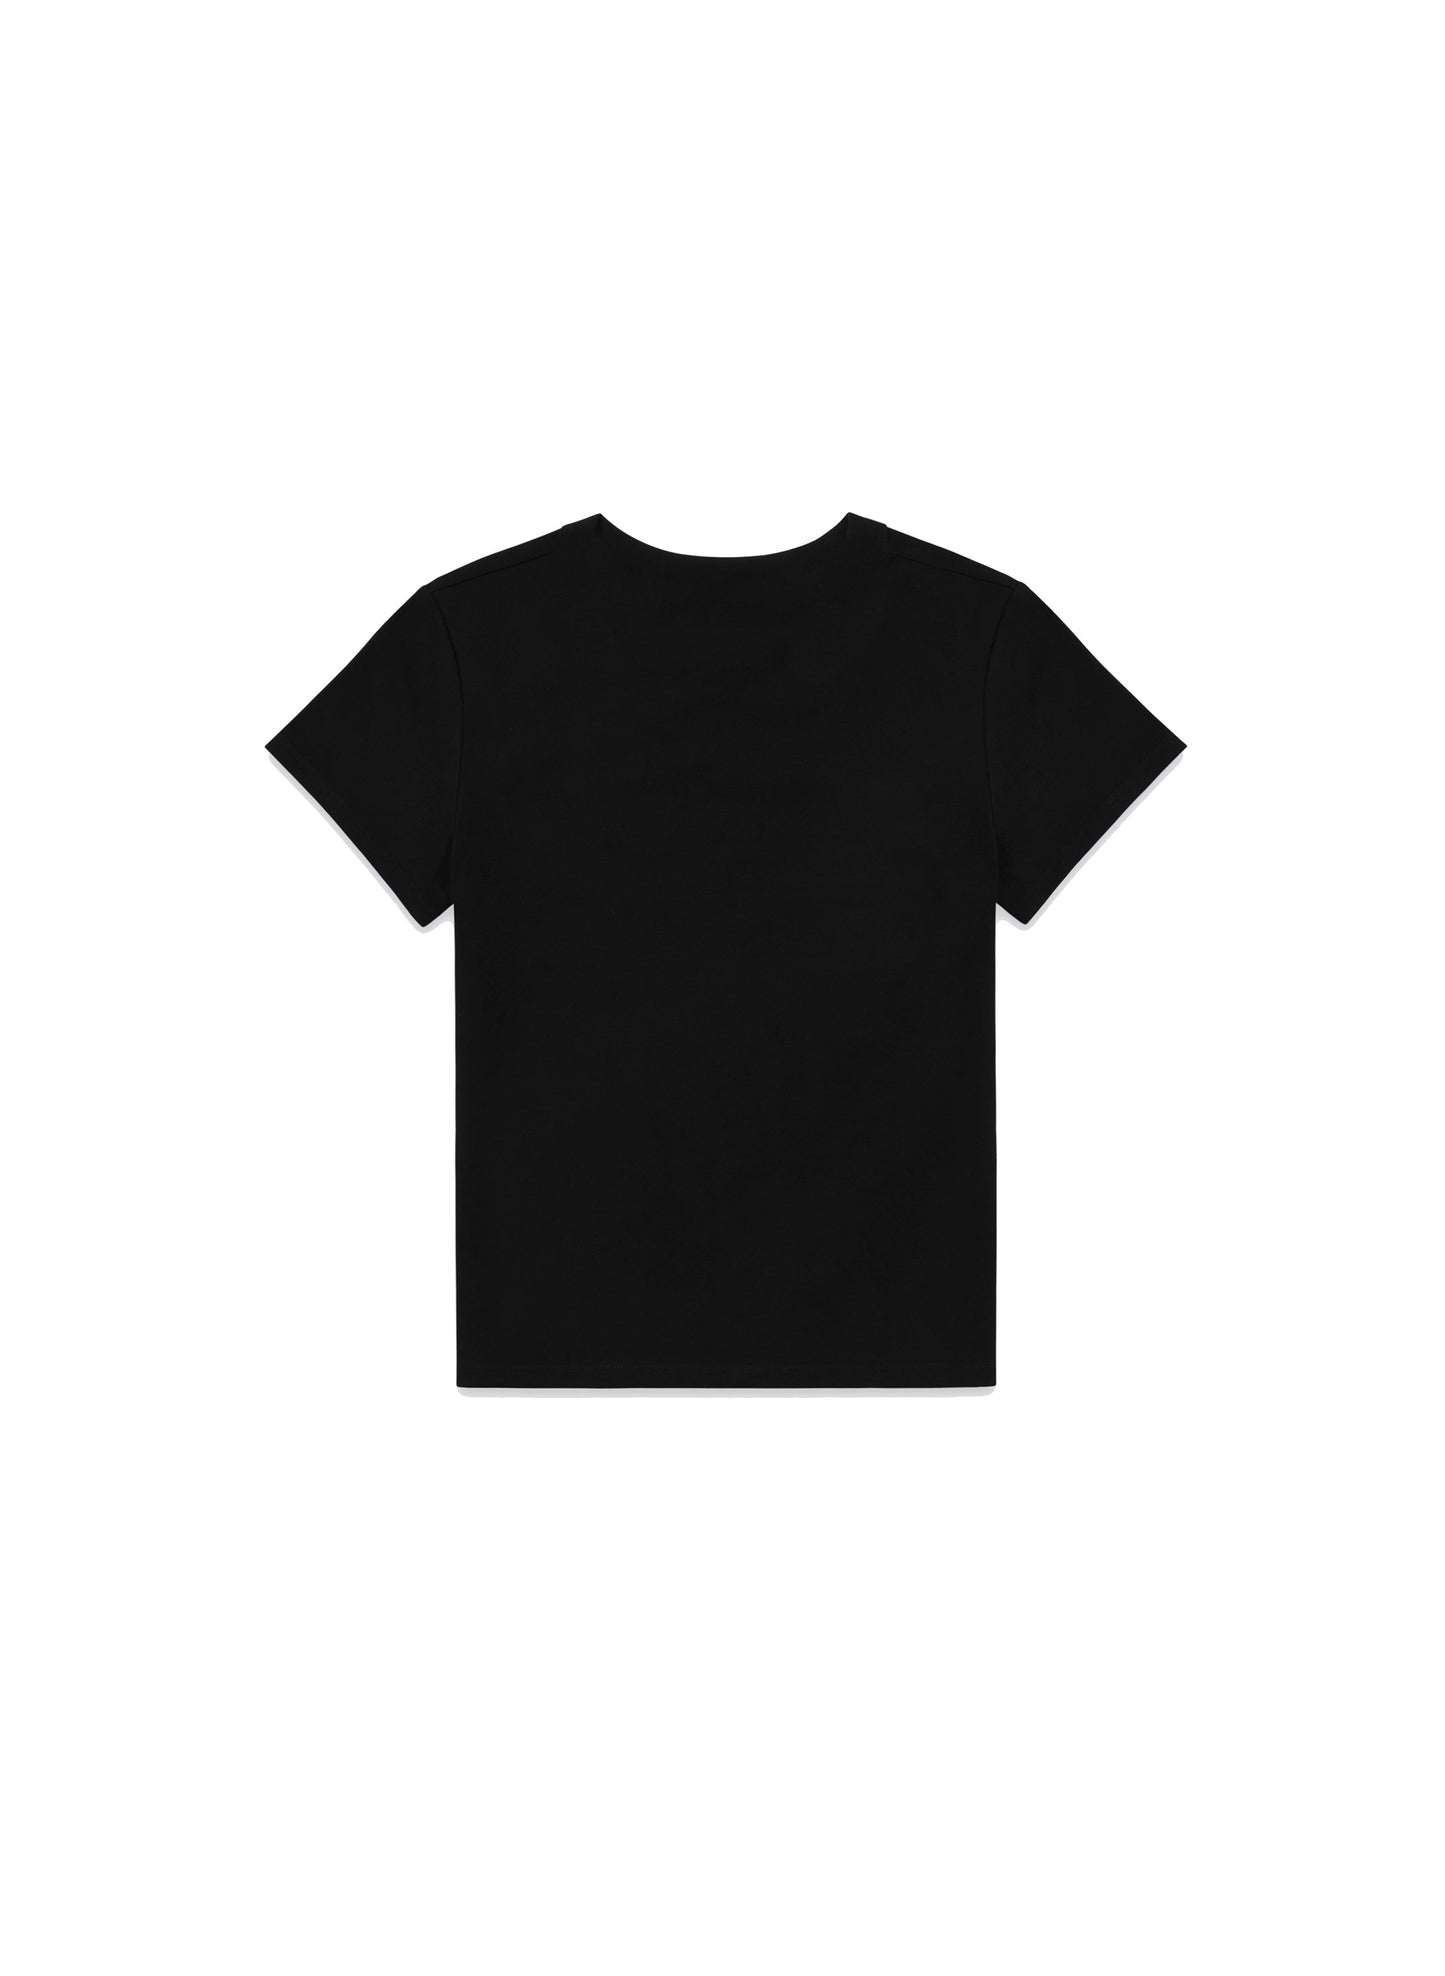 Taglioni Logo T-shirt in Black